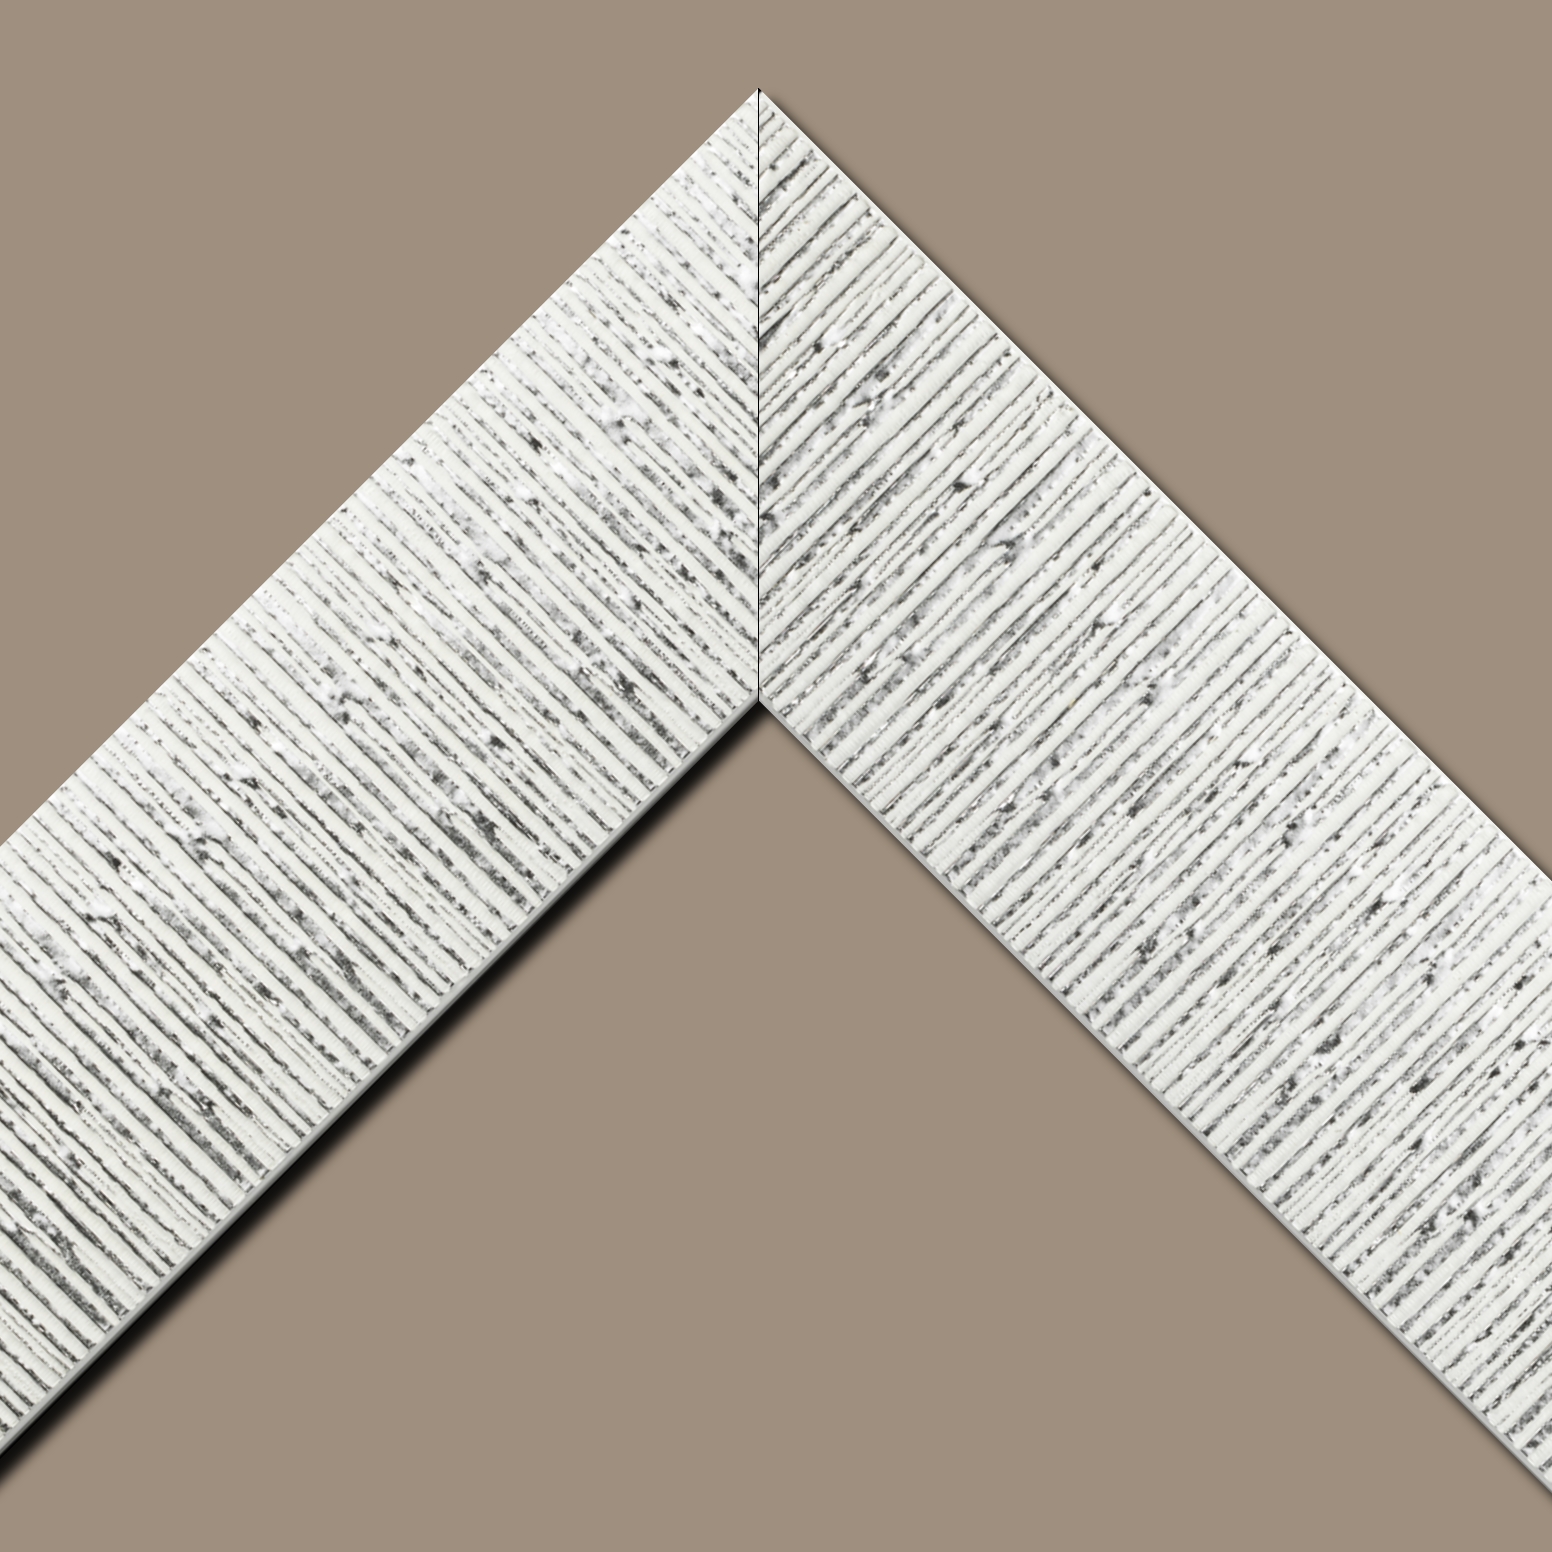 Baguette bois profil plat largeur 10.5cm couleur blanc mat strié argent chromé en relief